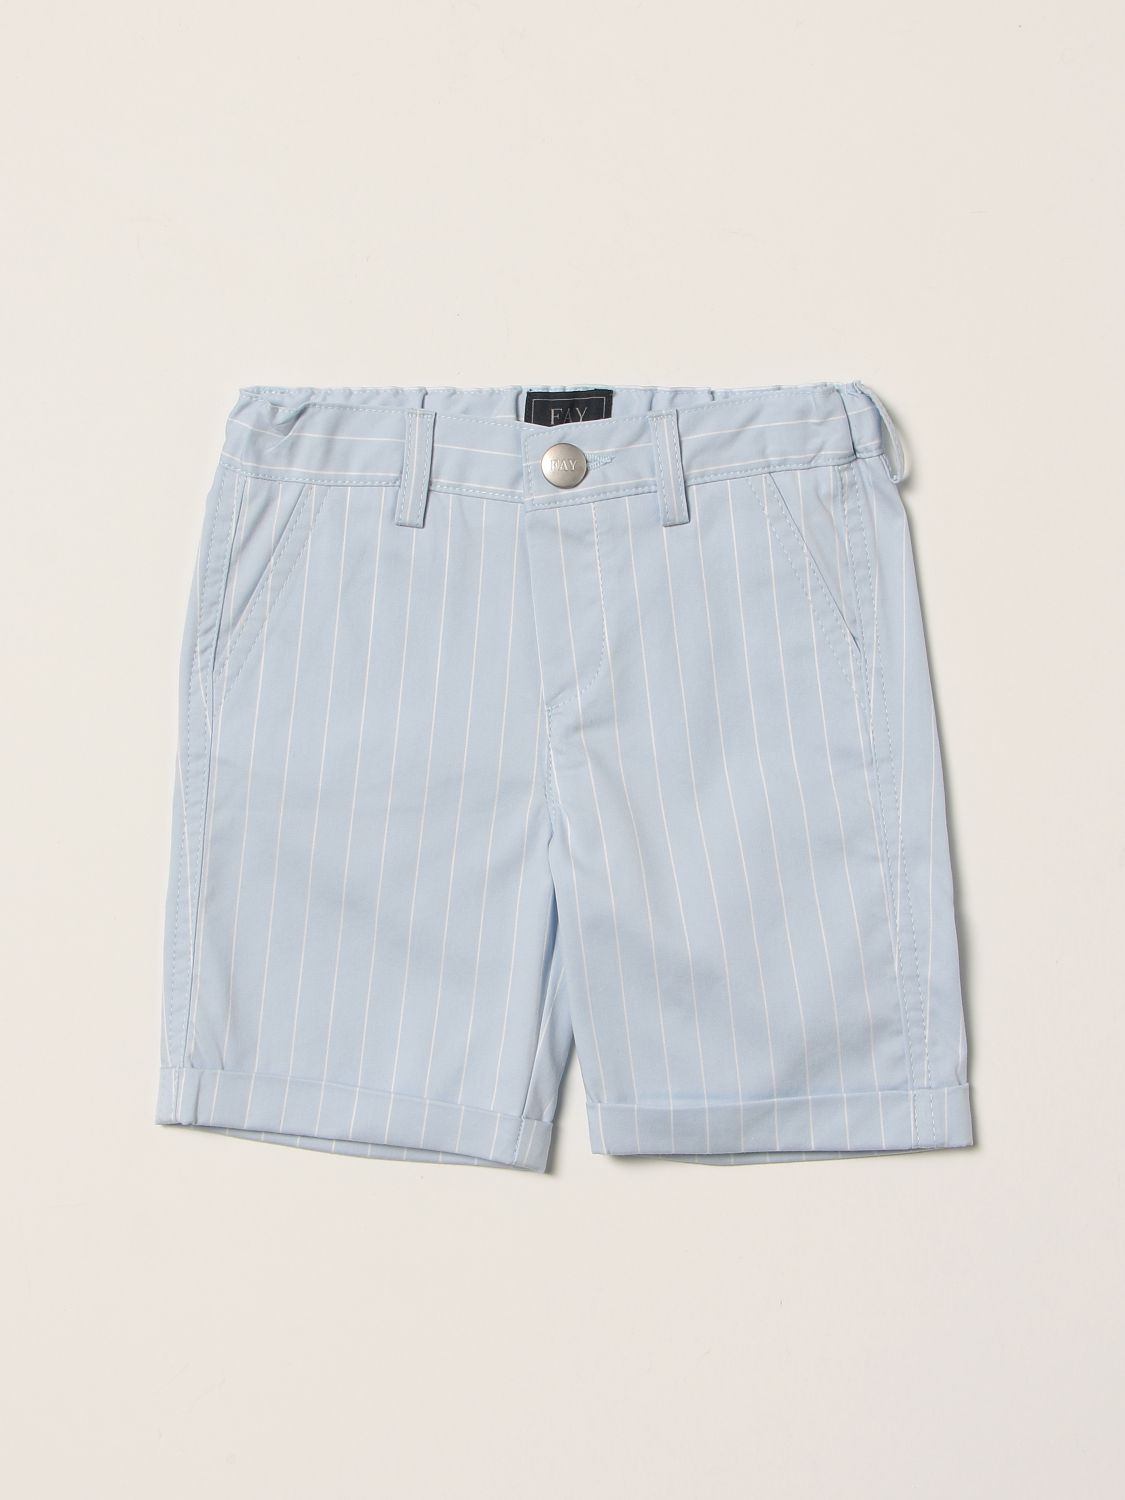 Pantalones cortos Fay: Pantalones cortos Fay para bebé azul claro 1